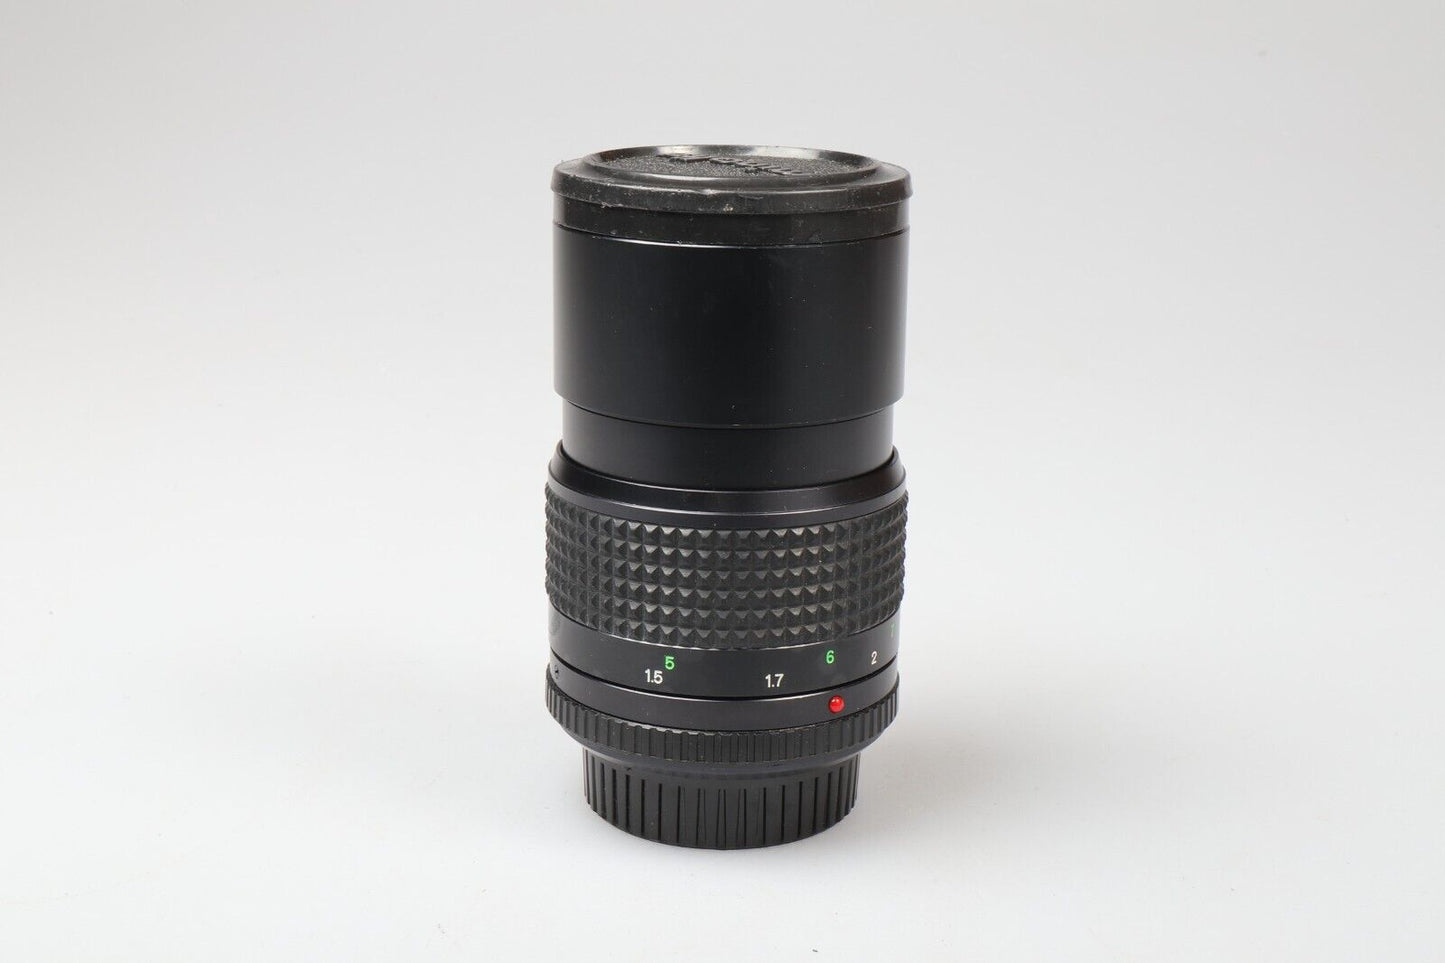 Minolta MD Tele Rokkor-lens | 135 mm f/3.5 | Minolta MD-vatting